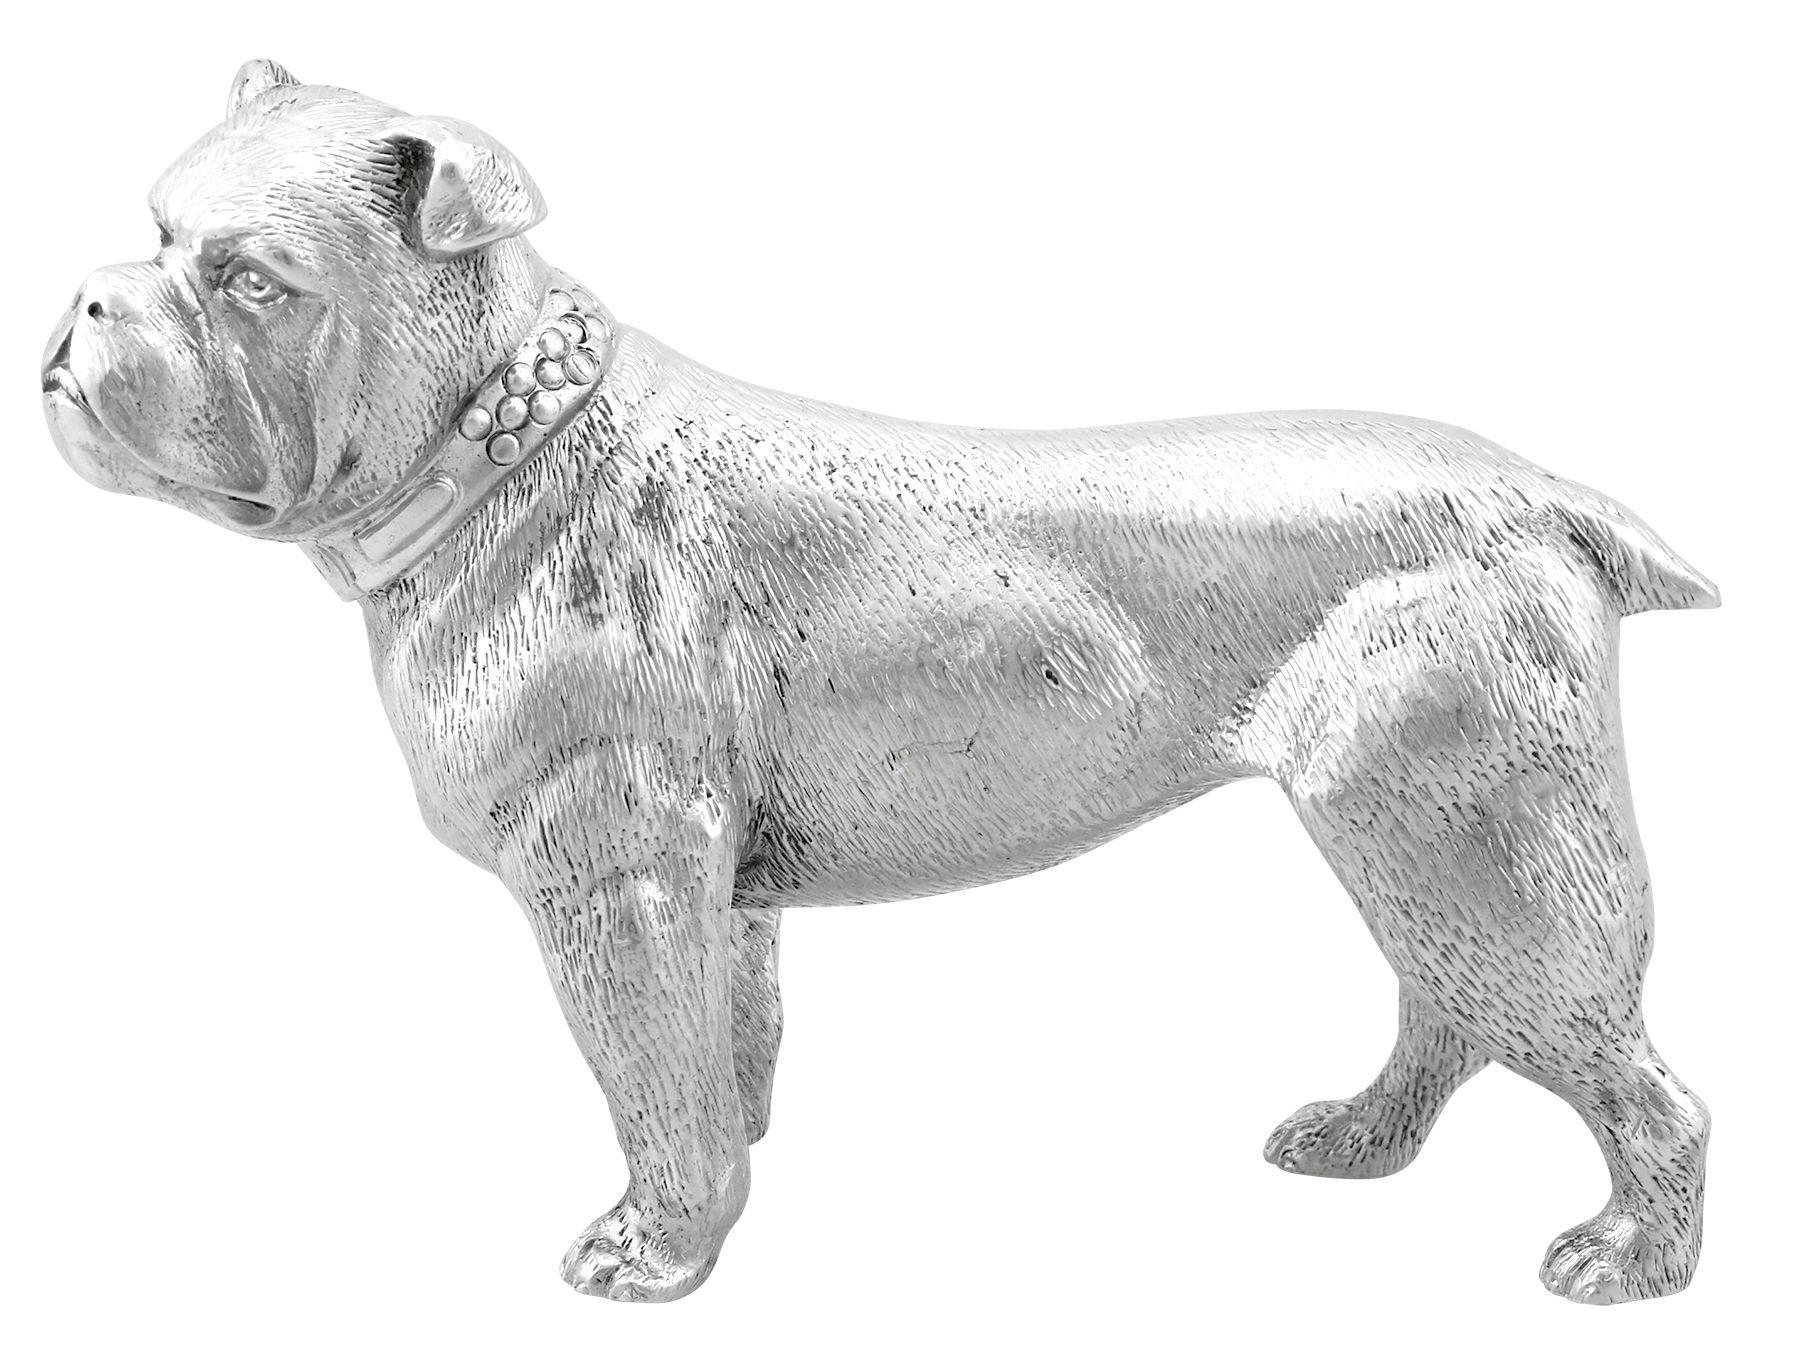 Eine außergewöhnliche, feine und beeindruckende Vintage 1980er Jahre gegossen europäischen Sterling Silber Figur einer Bulldogge; Teil unserer Tier bezogenen Silberwaren Sammlung

Dieses außergewöhnliche Vintage-Ornament aus gegossenem